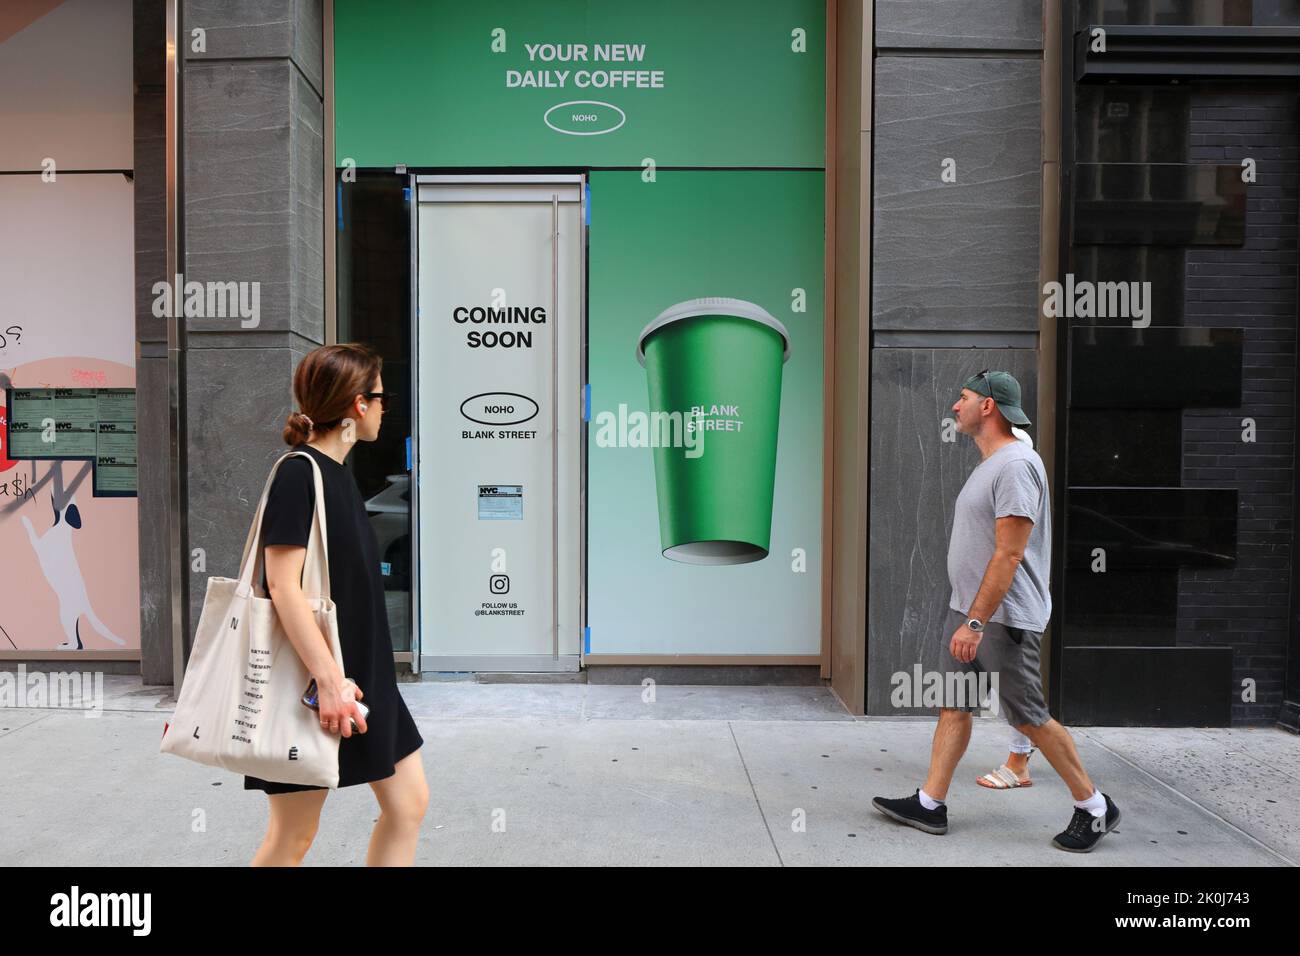 Personnes qui marchent devant une chaîne de cafés semi-automatisés Blank Street Coffee en construction dans le quartier de NoHo à Manhattan, New York. Banque D'Images